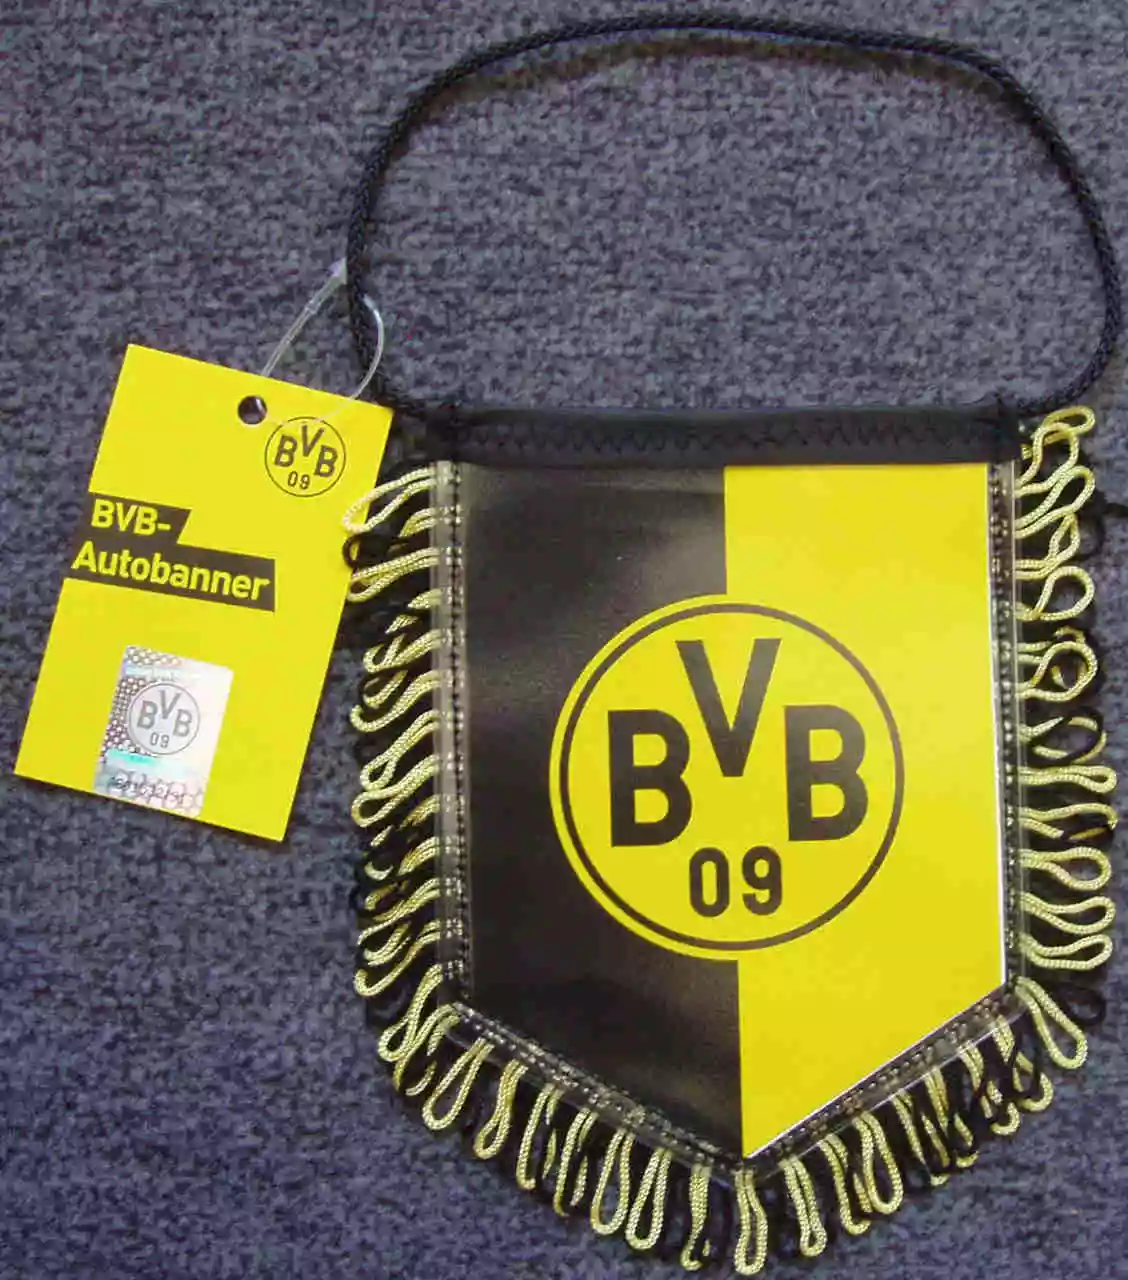 Borussia Dortmund Autobanner